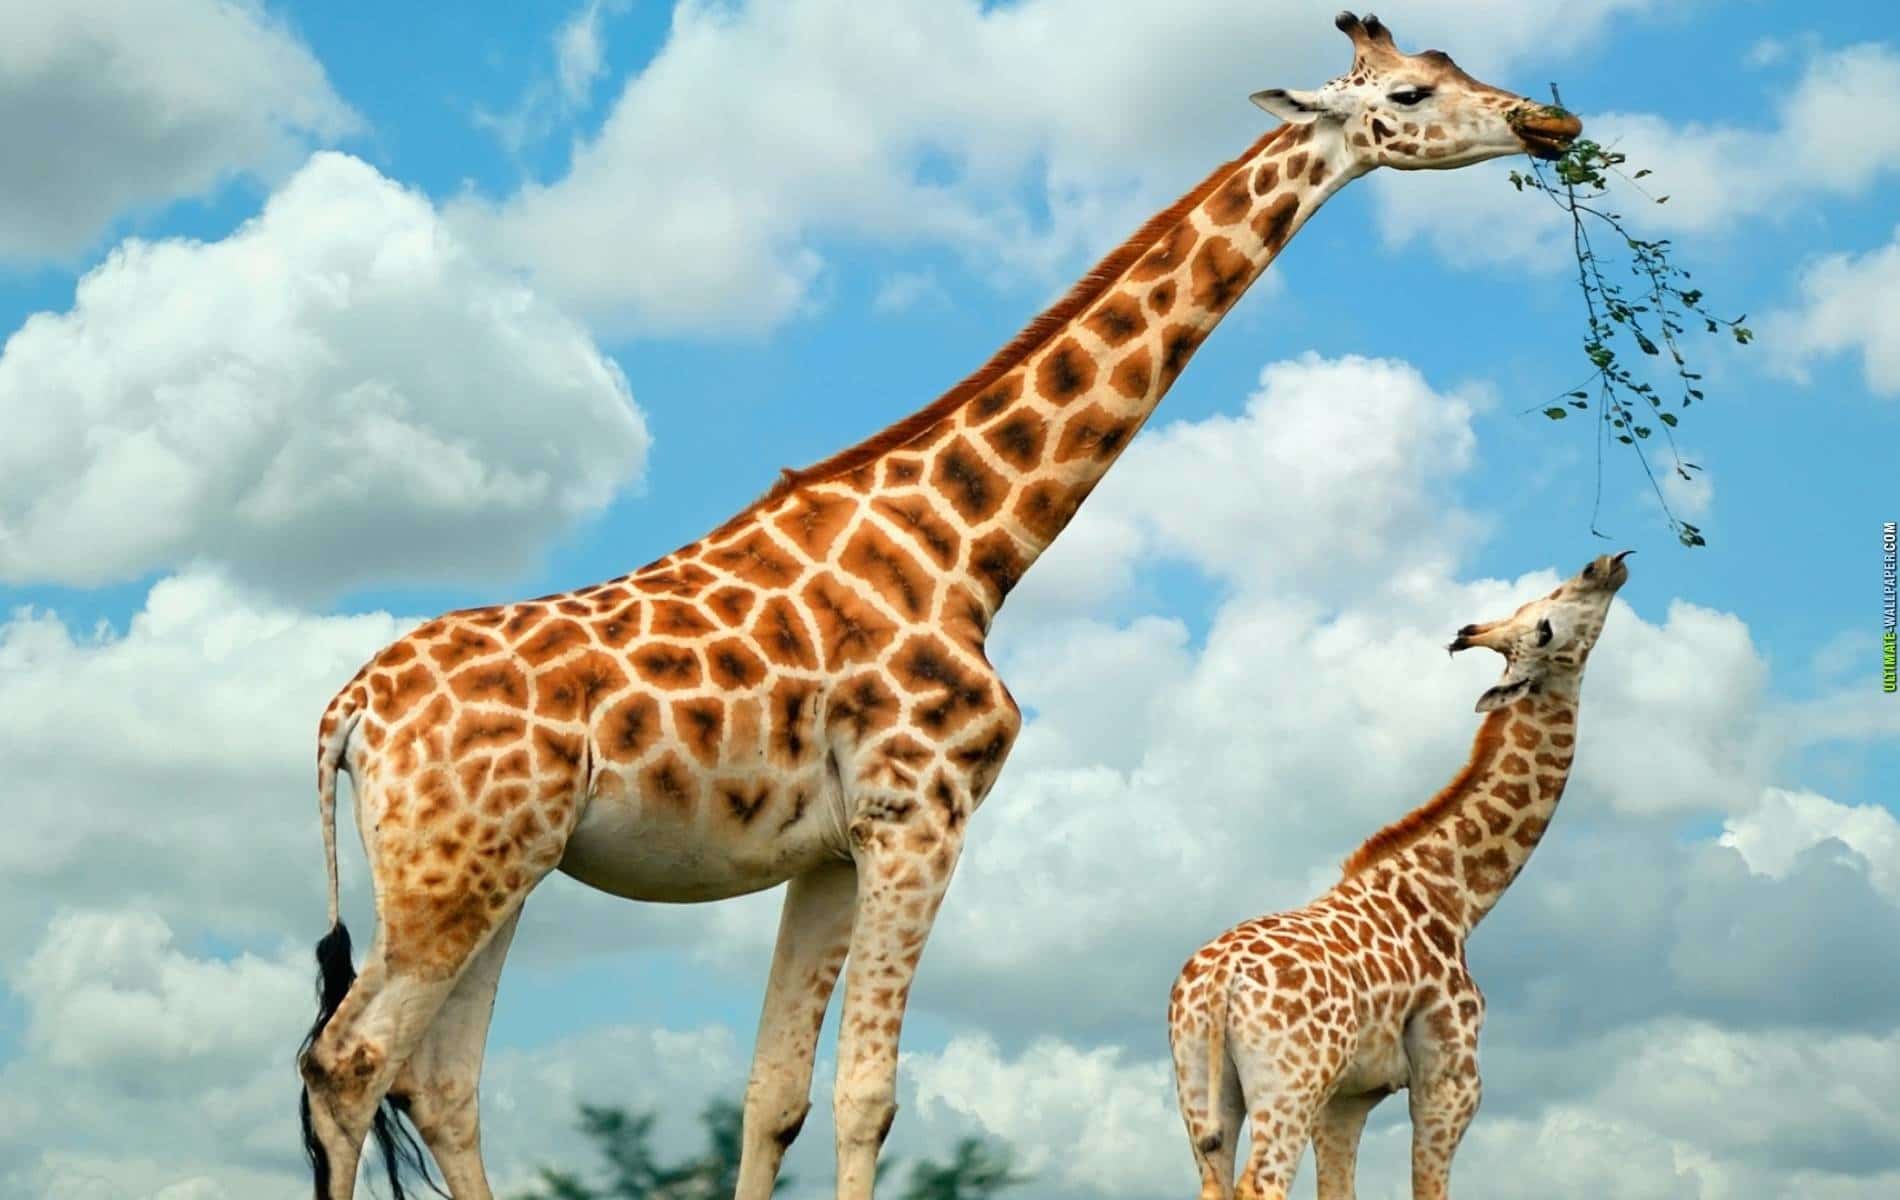 giraffe-eating.jpg